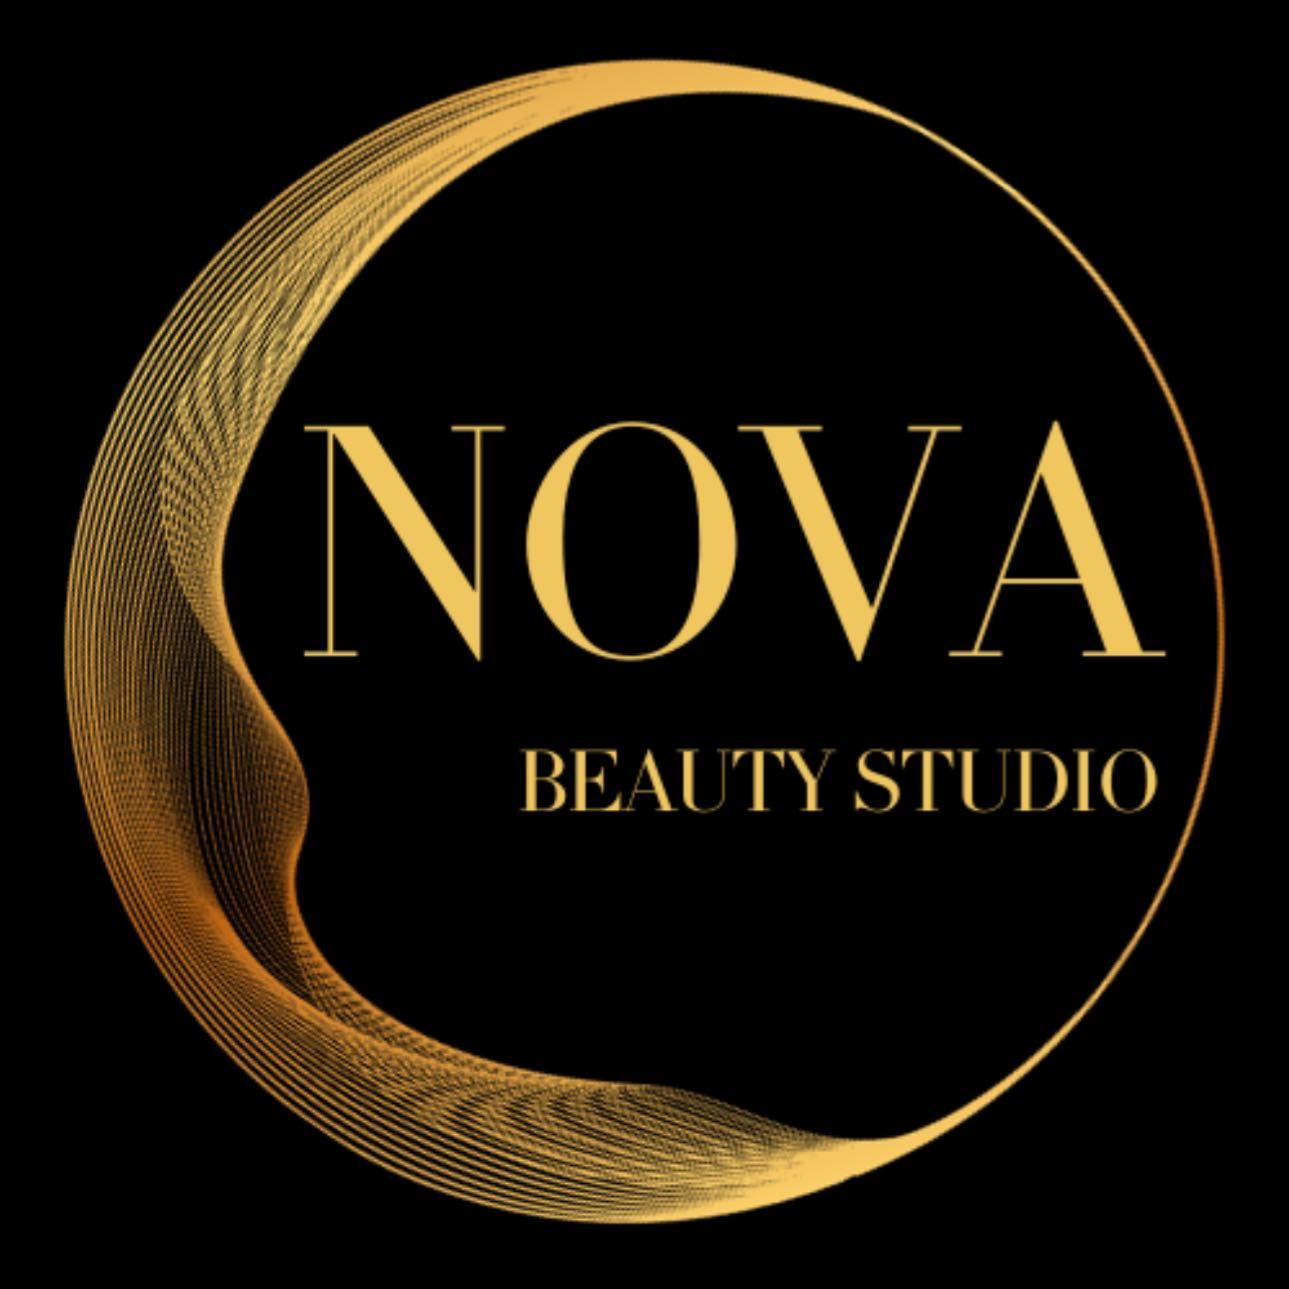 Nova Beauty Studio, Calle del doctor Urquiola 13, 28025,Madrid, Calle del Doctor Urquiola 13, 28025, Madrid